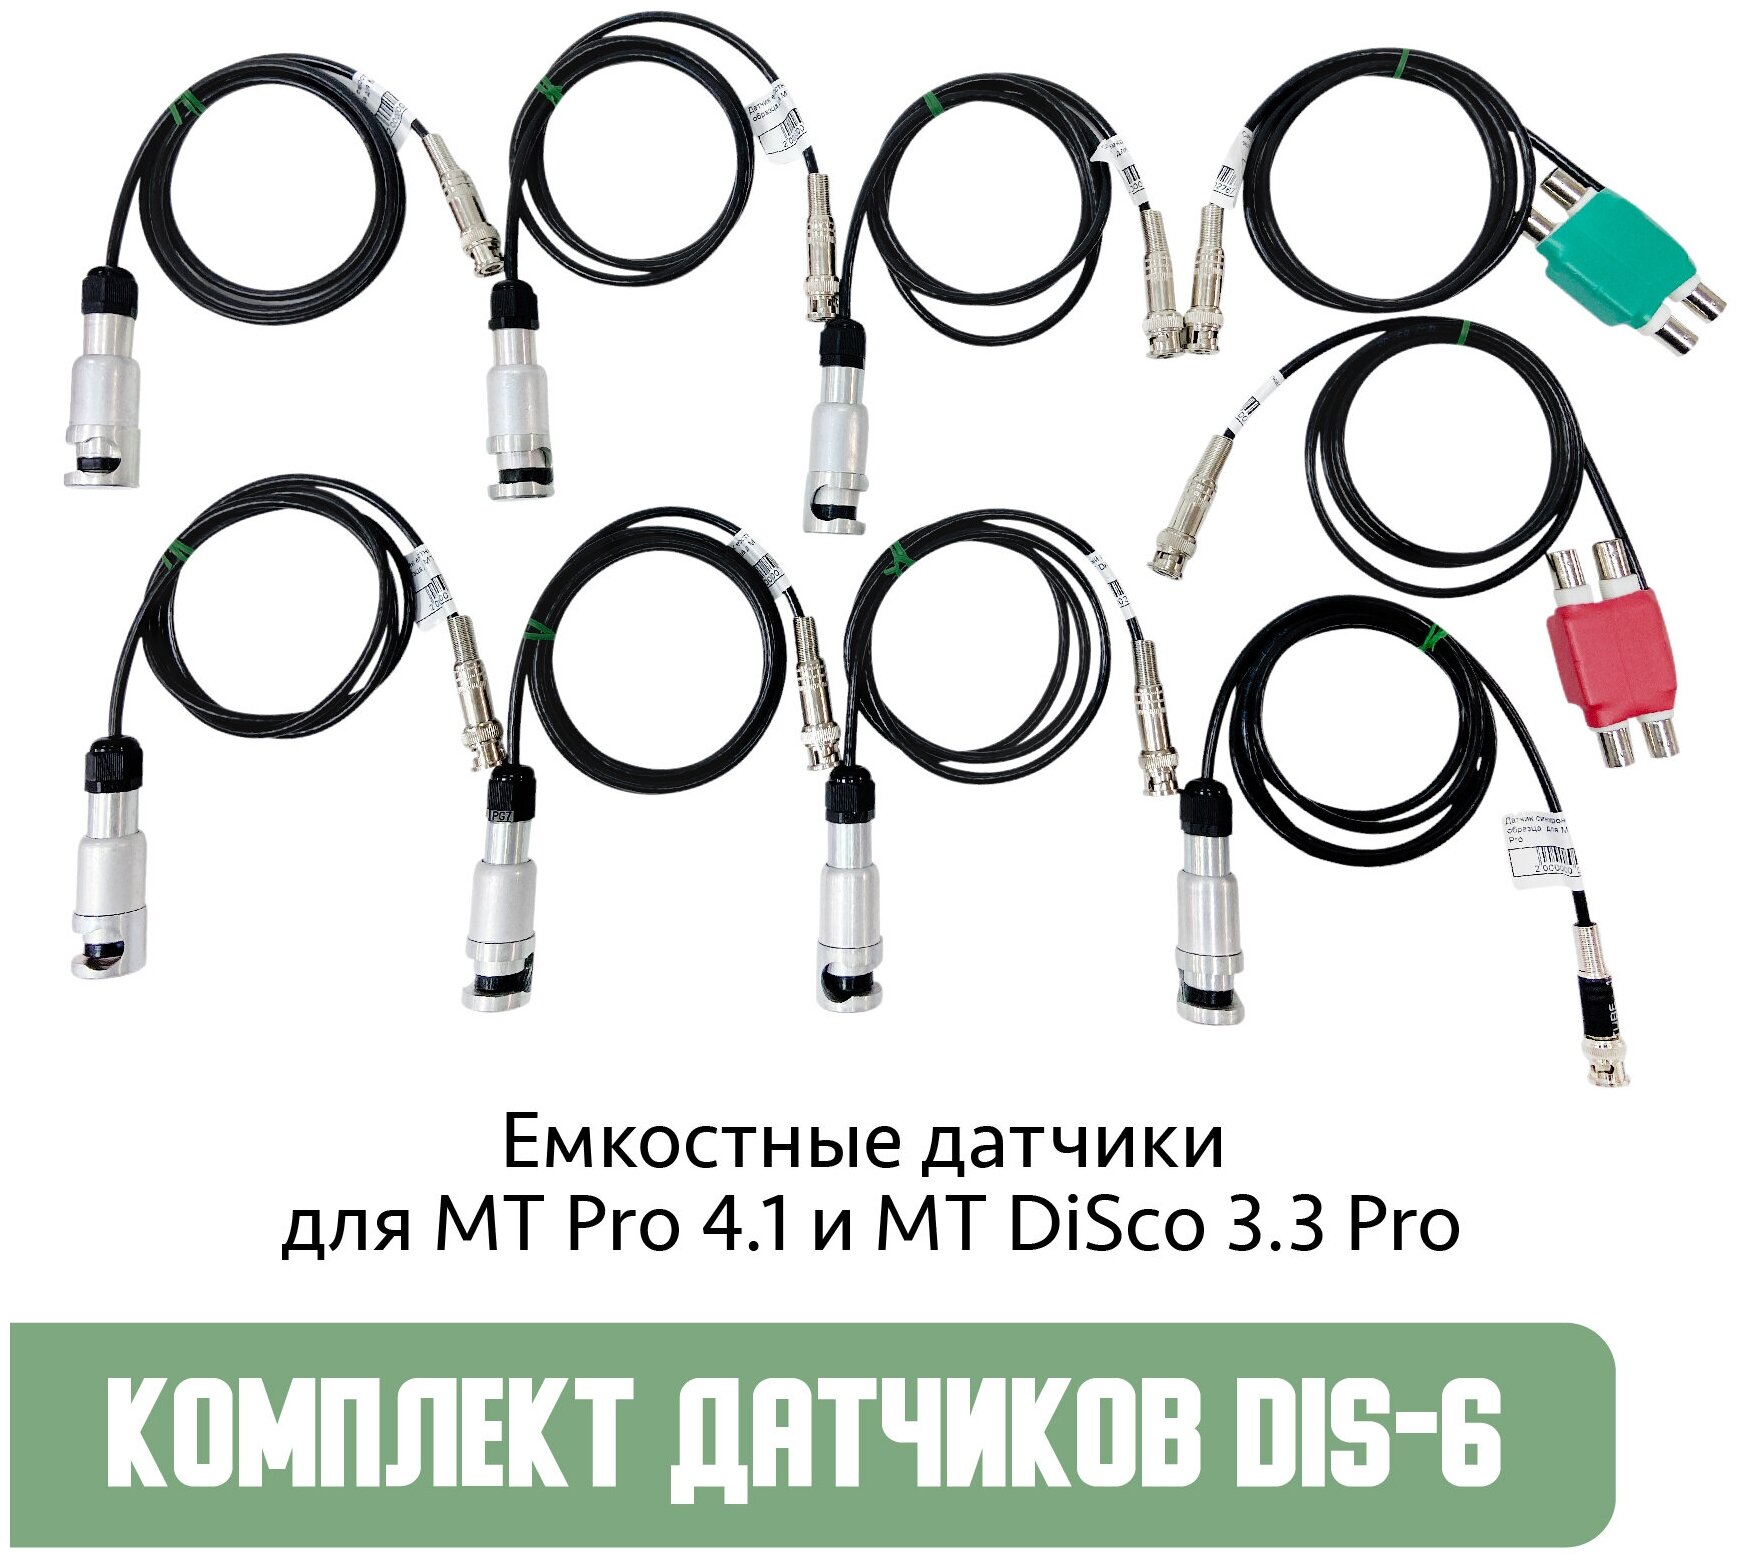 Диагностический комплект датчиков DIS-6 от Мотор-Мастер для USB осцилографов. Емкостные датчики для MT Pro 4.1 и MT DiSco 3.3 Pro